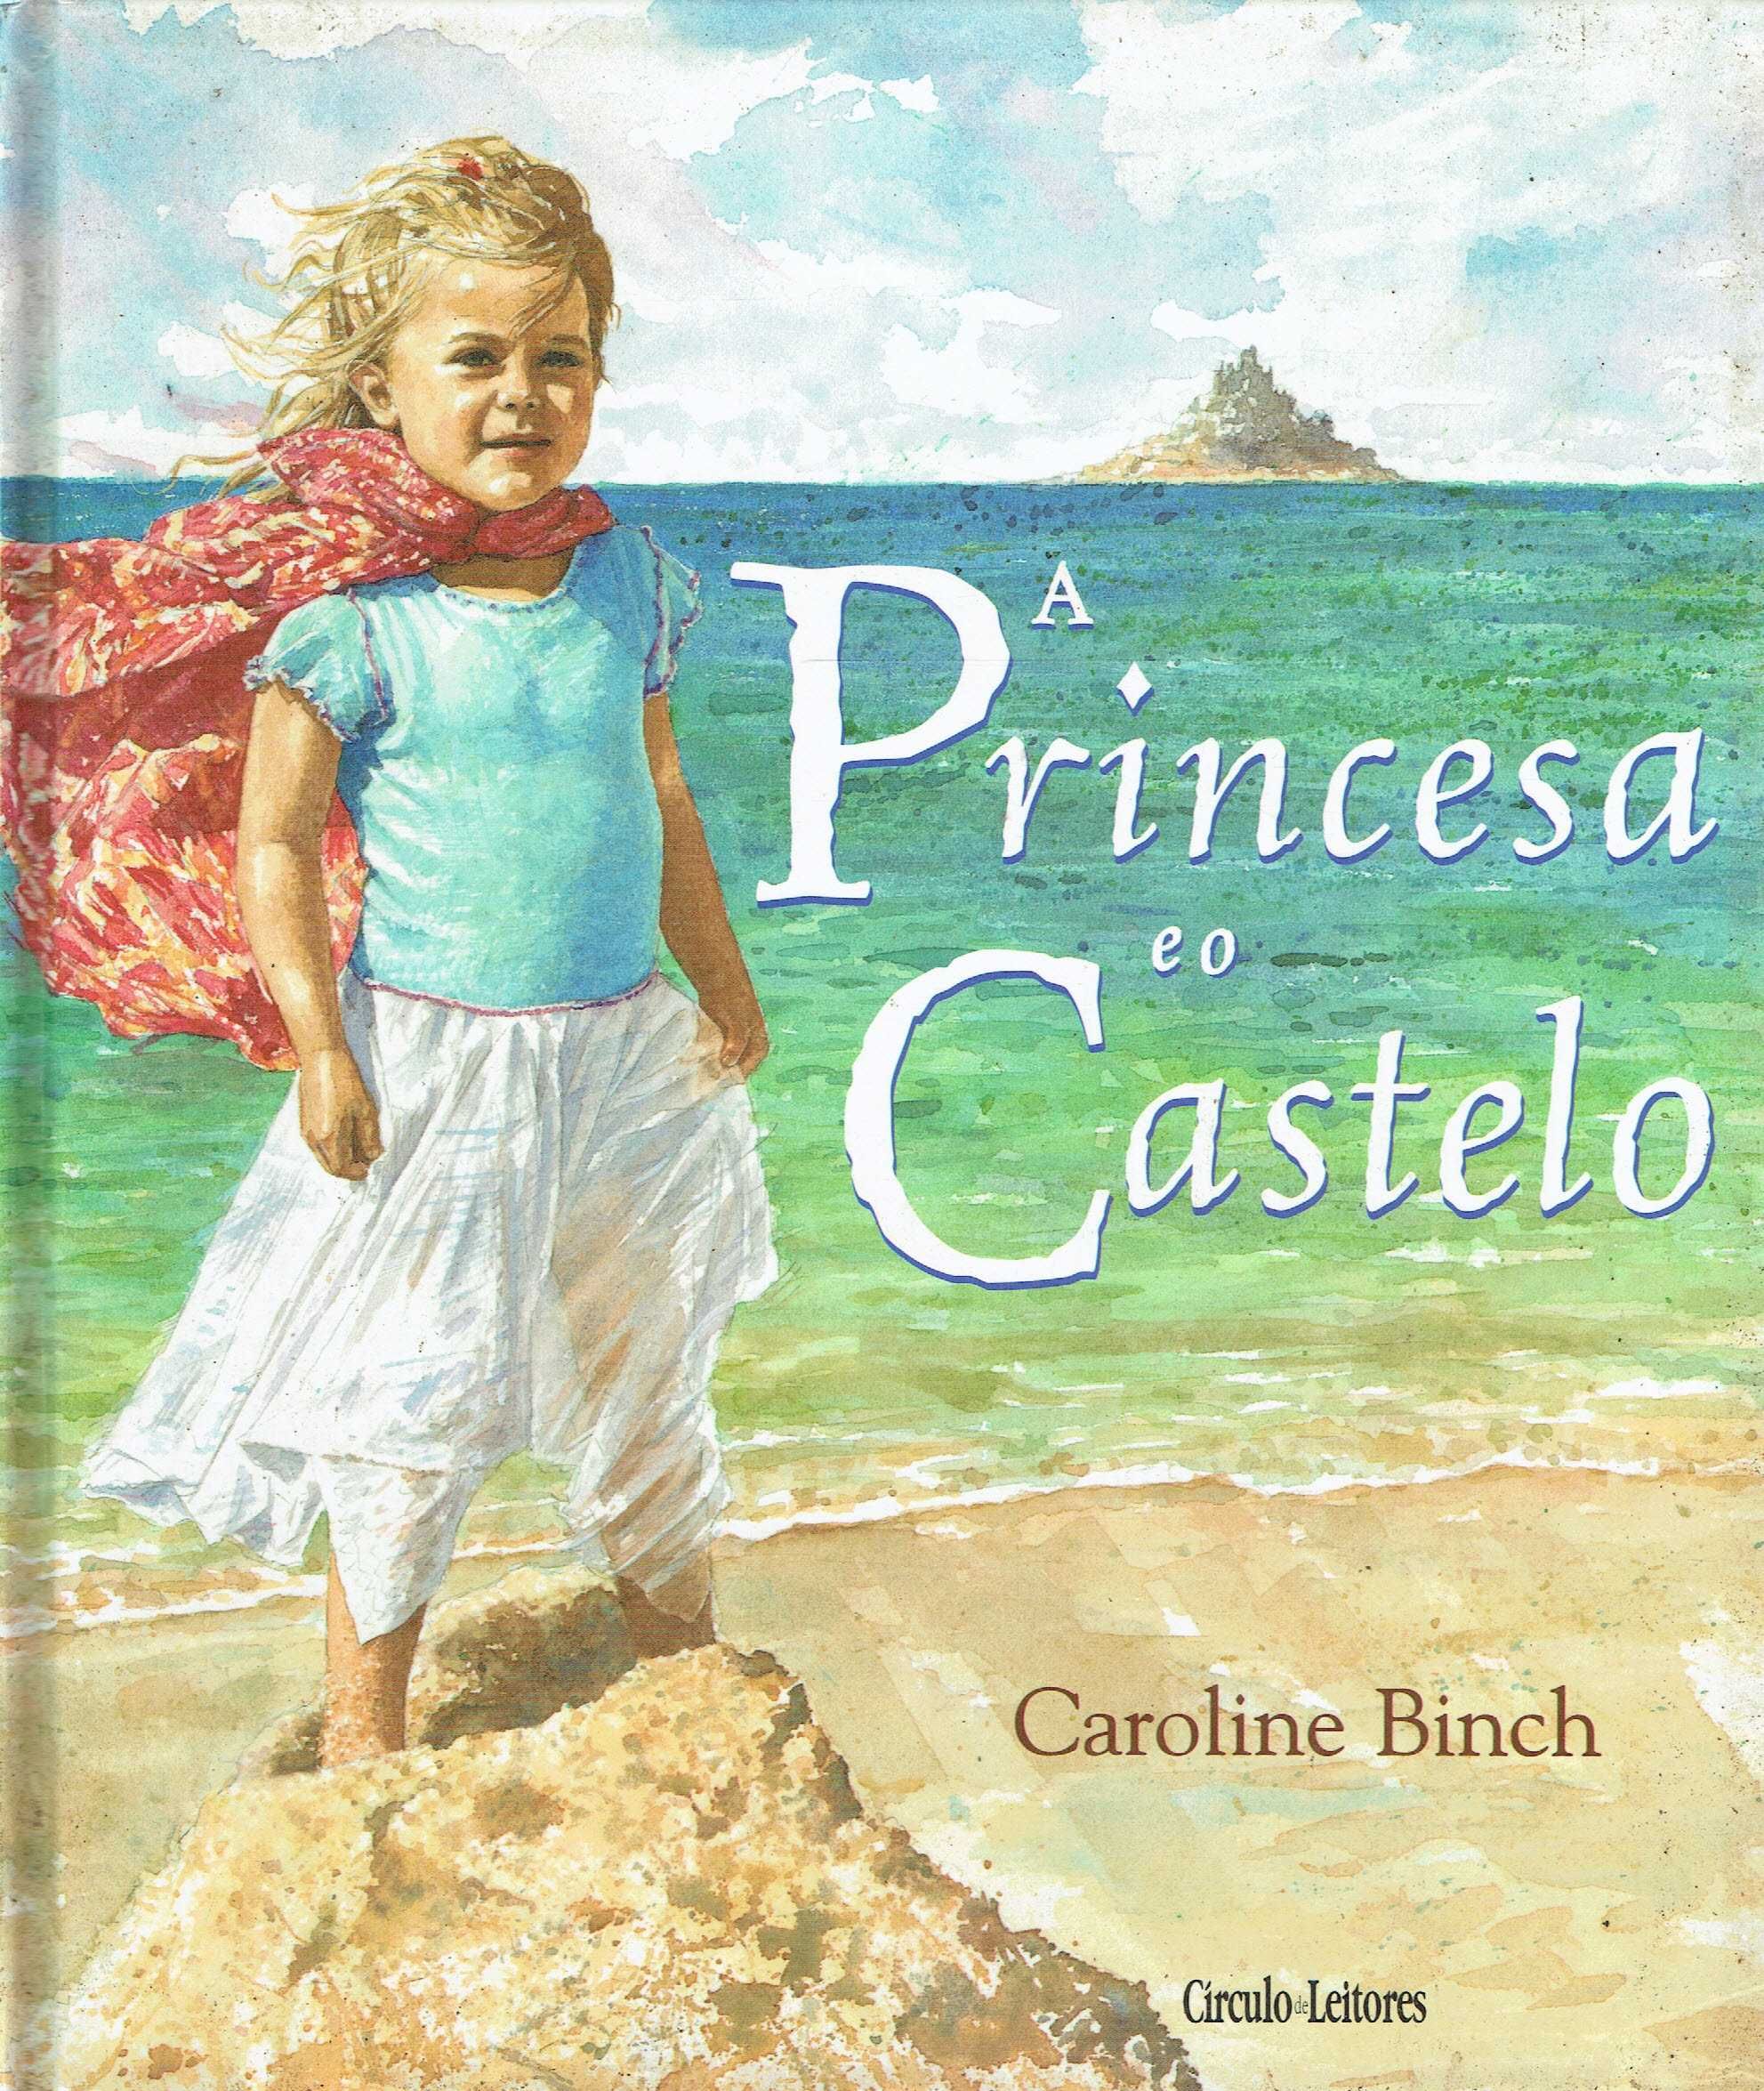 14670

A princesa e o castelo 
de Caroline Binch